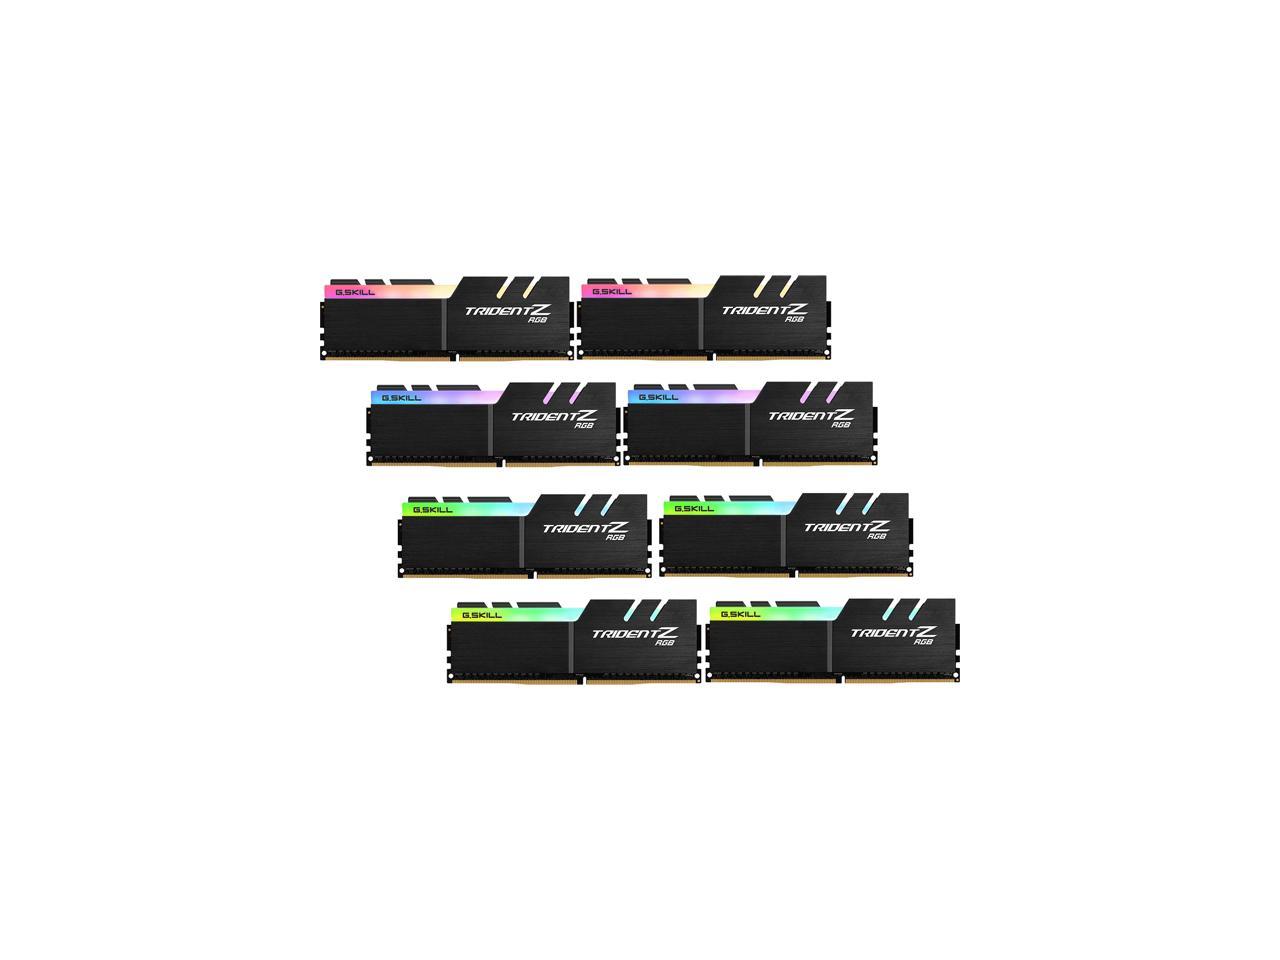 G.SKILL TridentZ RGB Series 64GB (8 x 8GB) 288-Pin DDR4 SDRAM DDR4 3600 (PC4 28800) Desktop Memory Model F4-3600C14Q2-64GTZRB